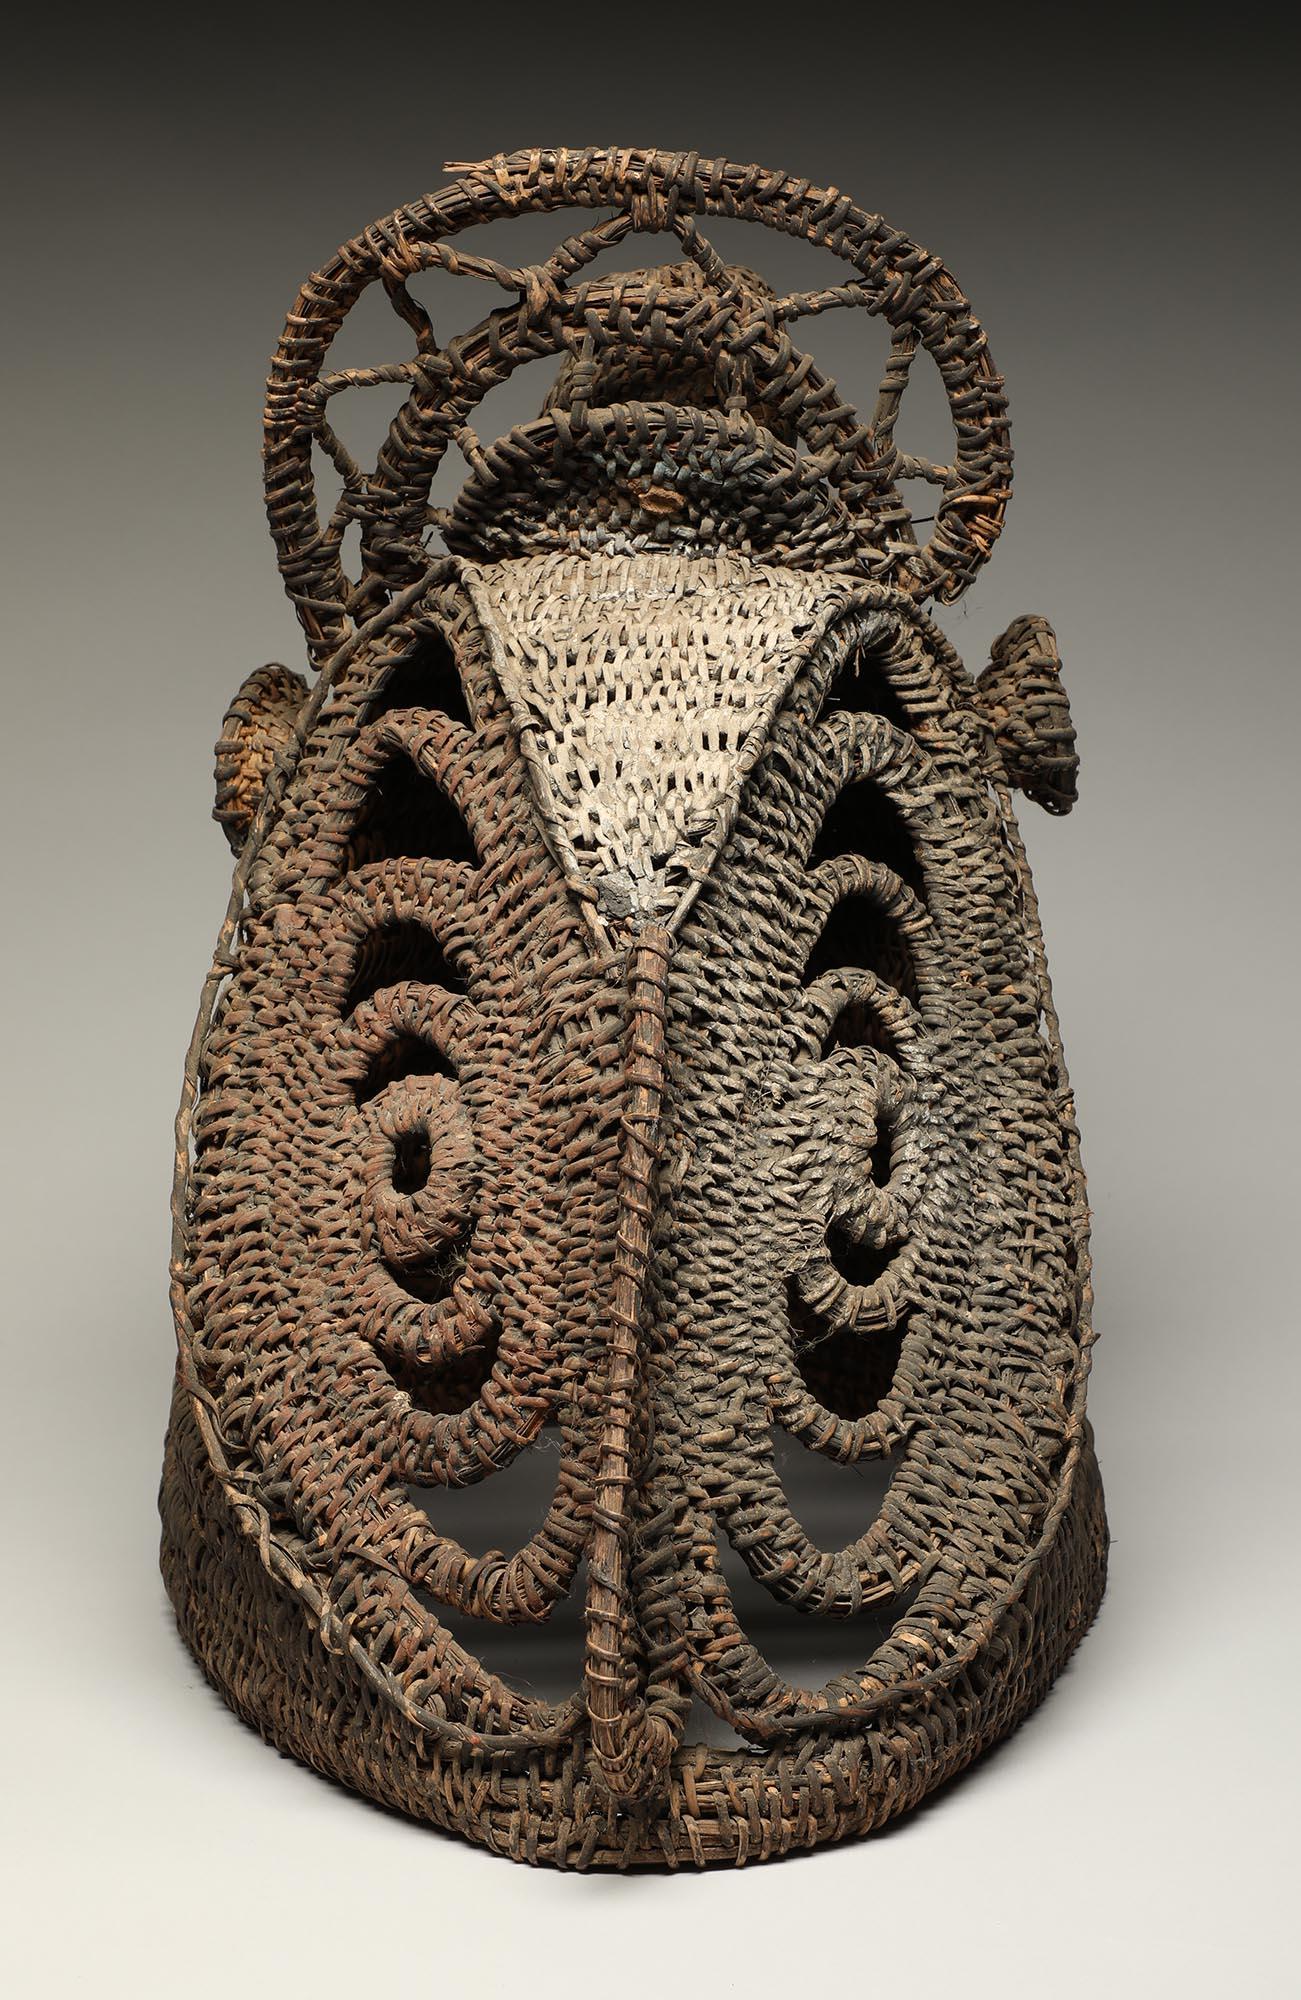 Masque casque d'igname en vannerie peinte de Papouasie-Nouvelle-Guinée. Forme creuse tissée avec des traces de pigments rouges et blancs. Mesures : 14 1/2 pouces de haut, milieu du 20ème siècle.